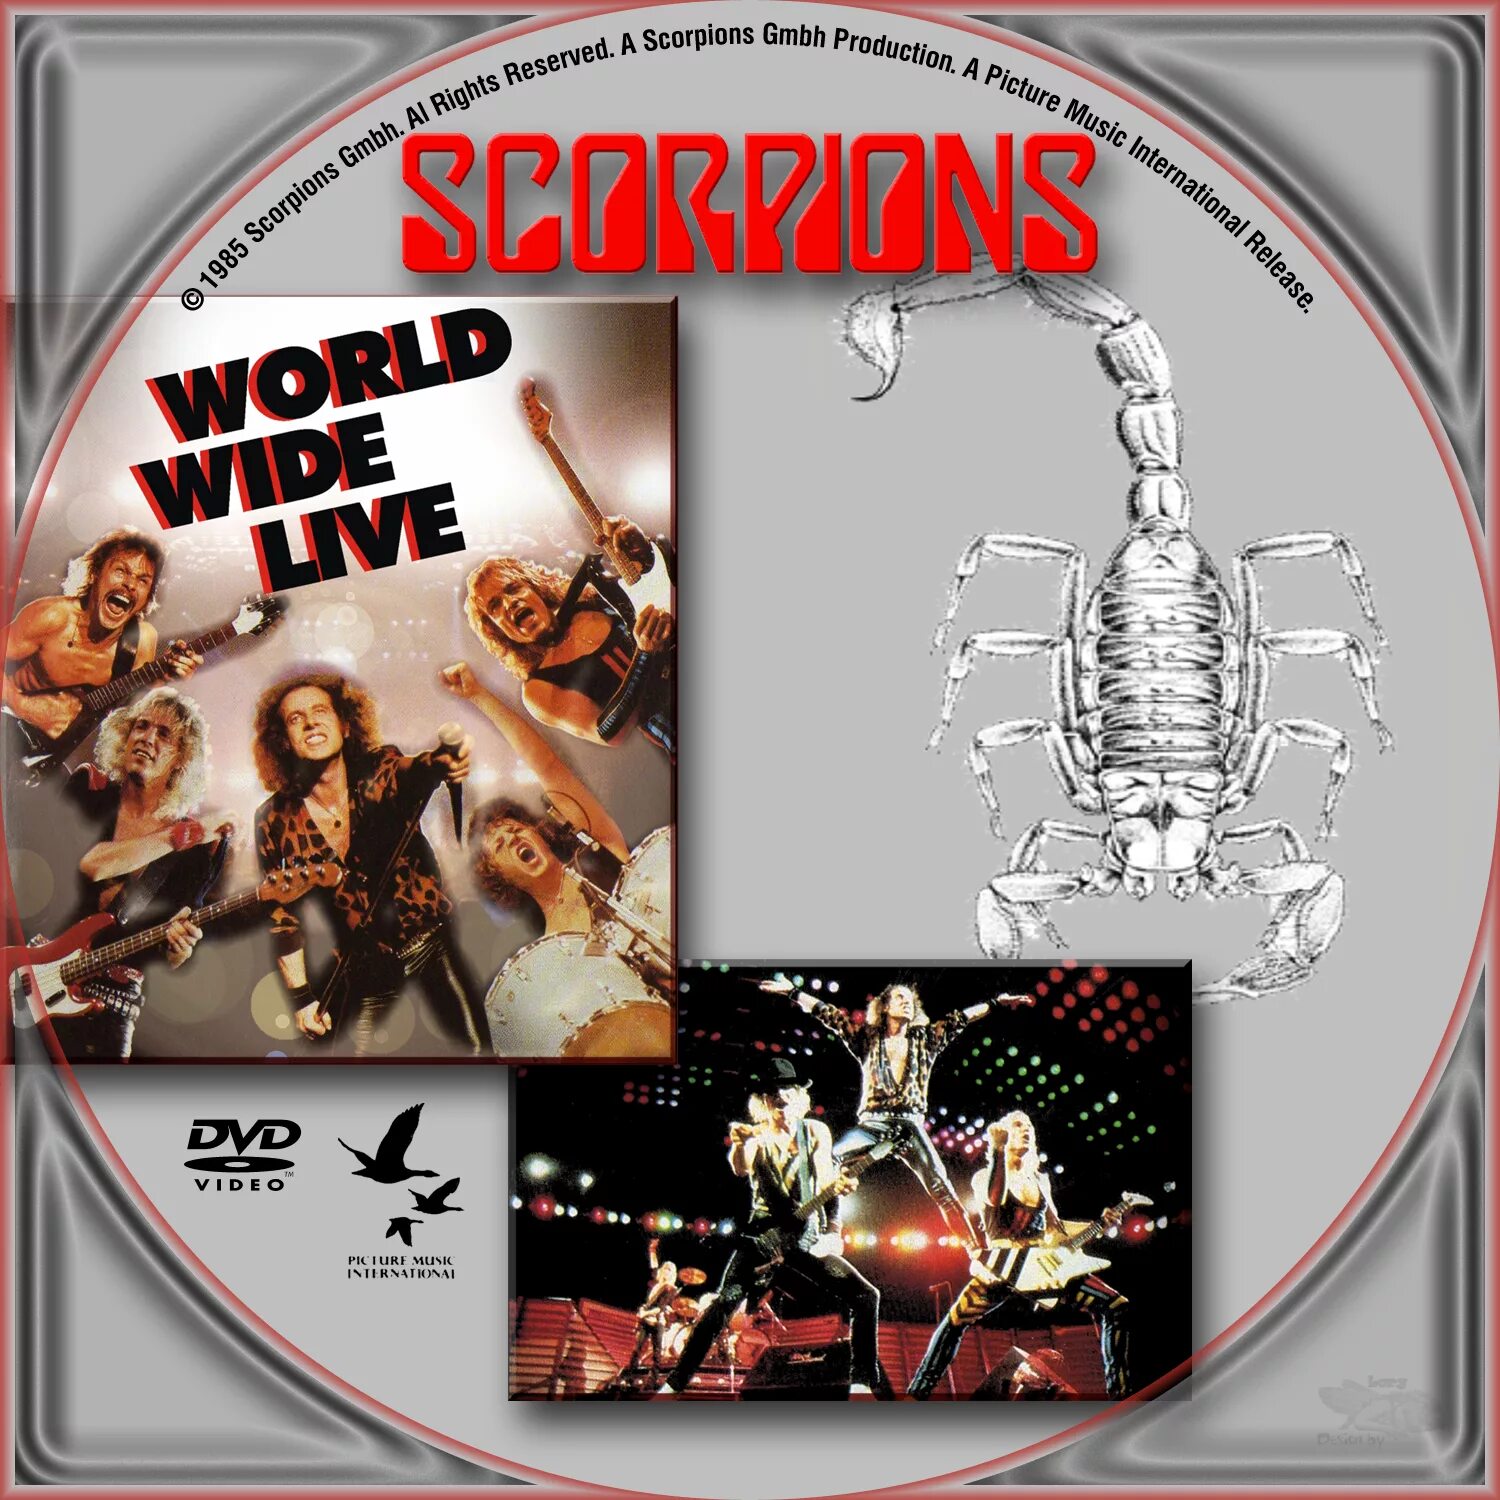 Scorpions World wide Live 1985. Scorpions 1985 World wide Live Live. Scorpions 1985 обложка. Scorpions World wide Live 1985 2lp.